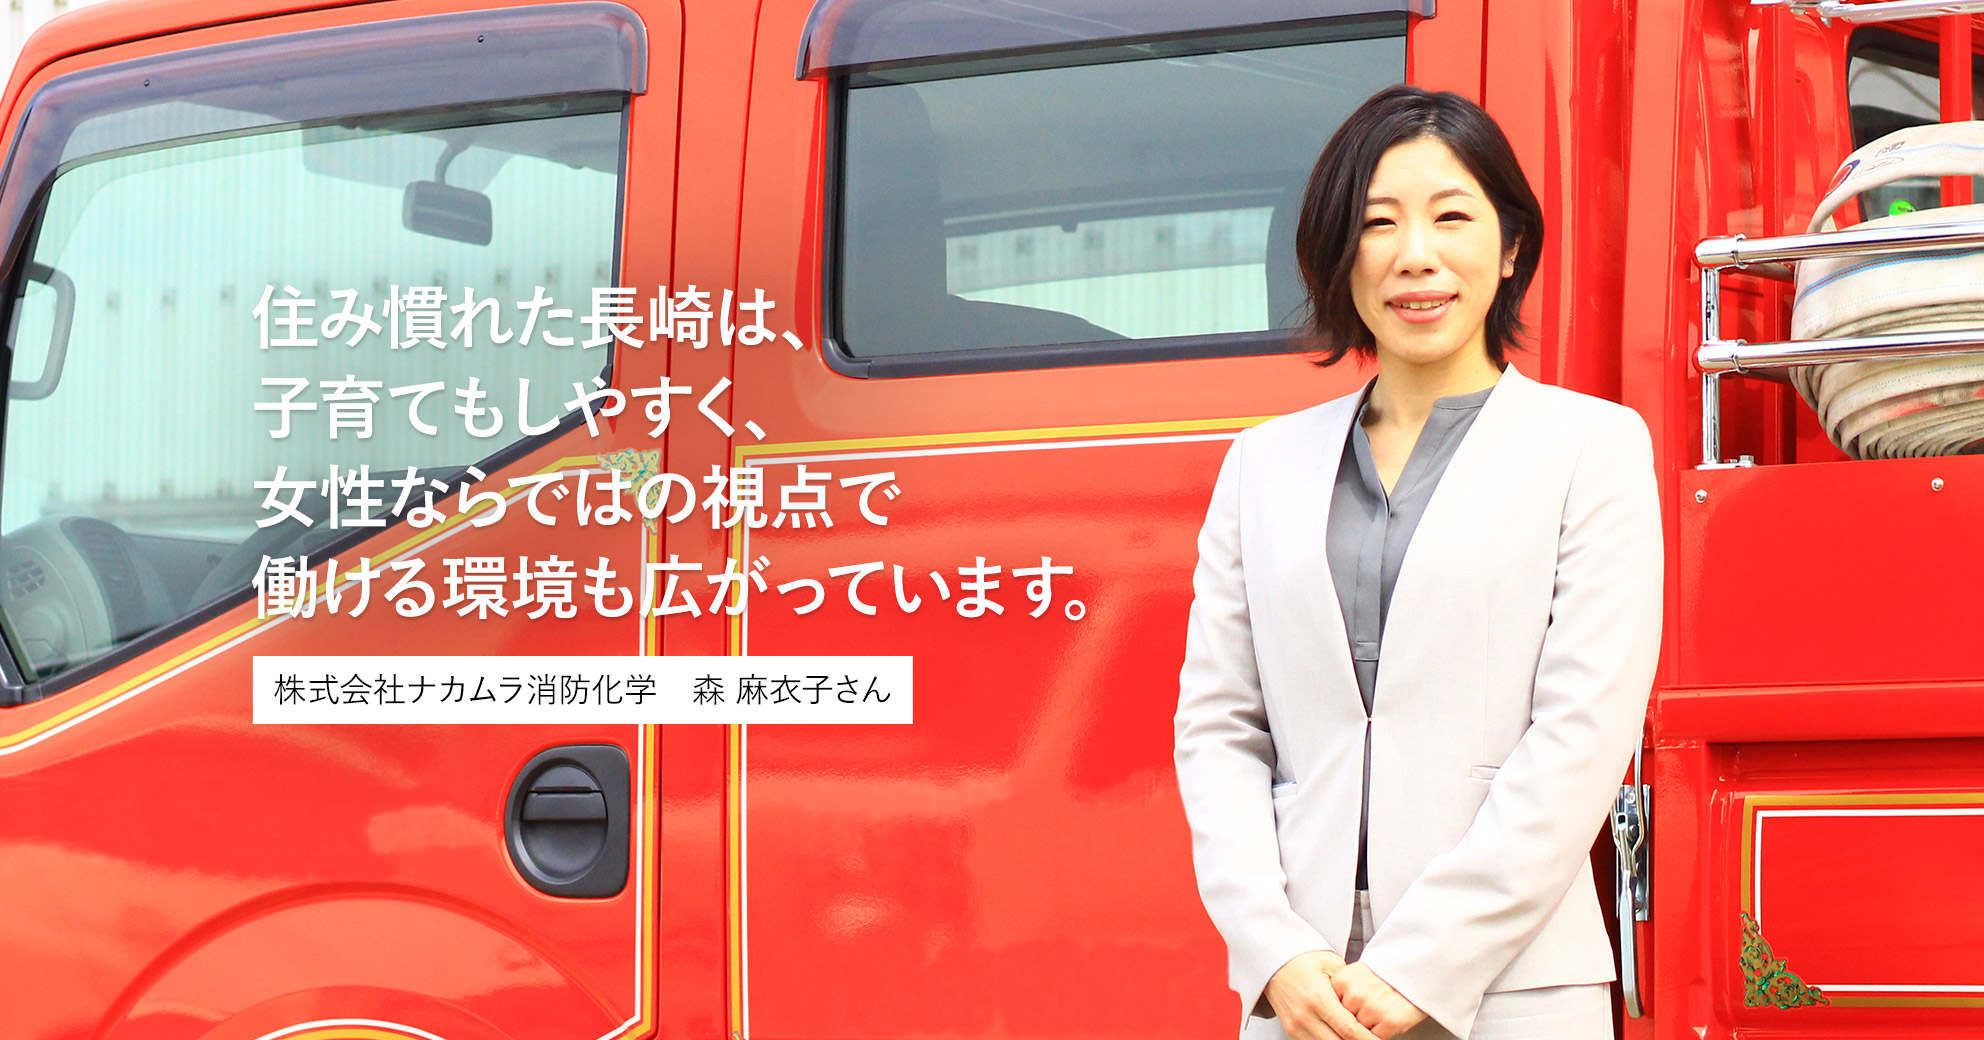 住み慣れた長崎は、子育てもしやすく、女性ならではの視点で働ける環境も広がっています。